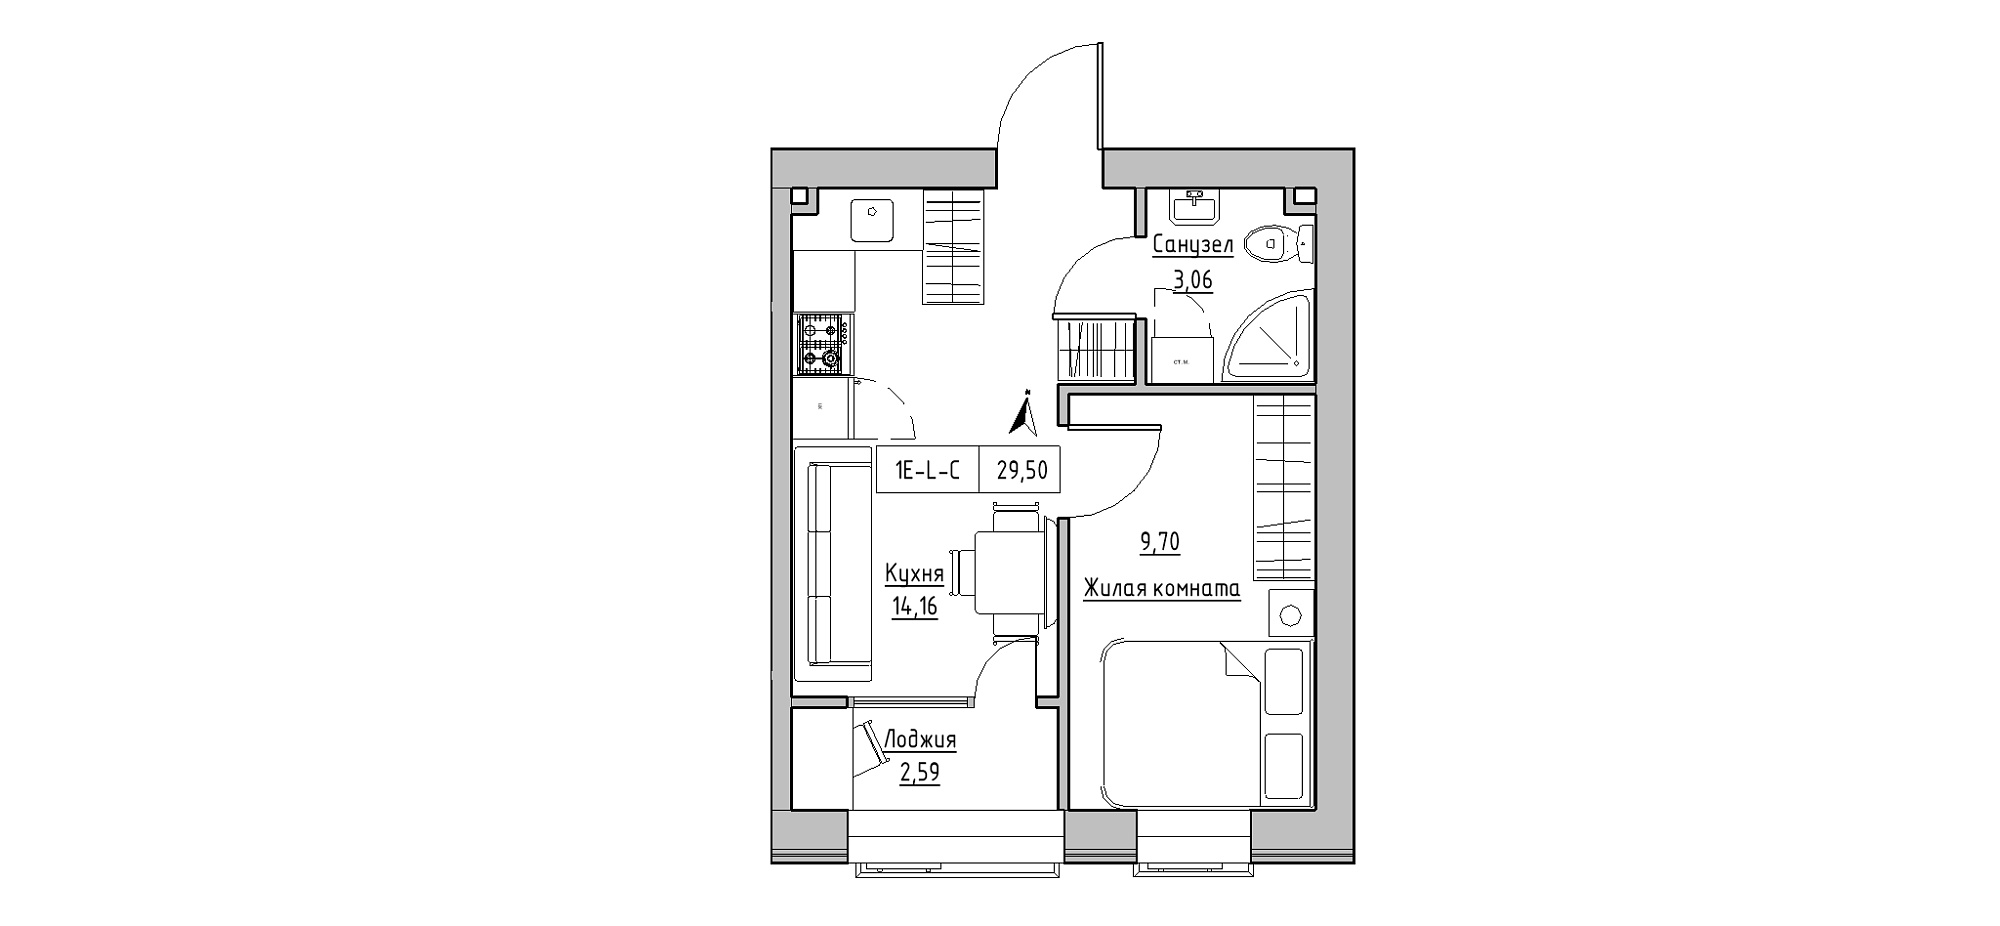 Планування 1-к квартира площею 29.5м2, KS-020-02/0006.